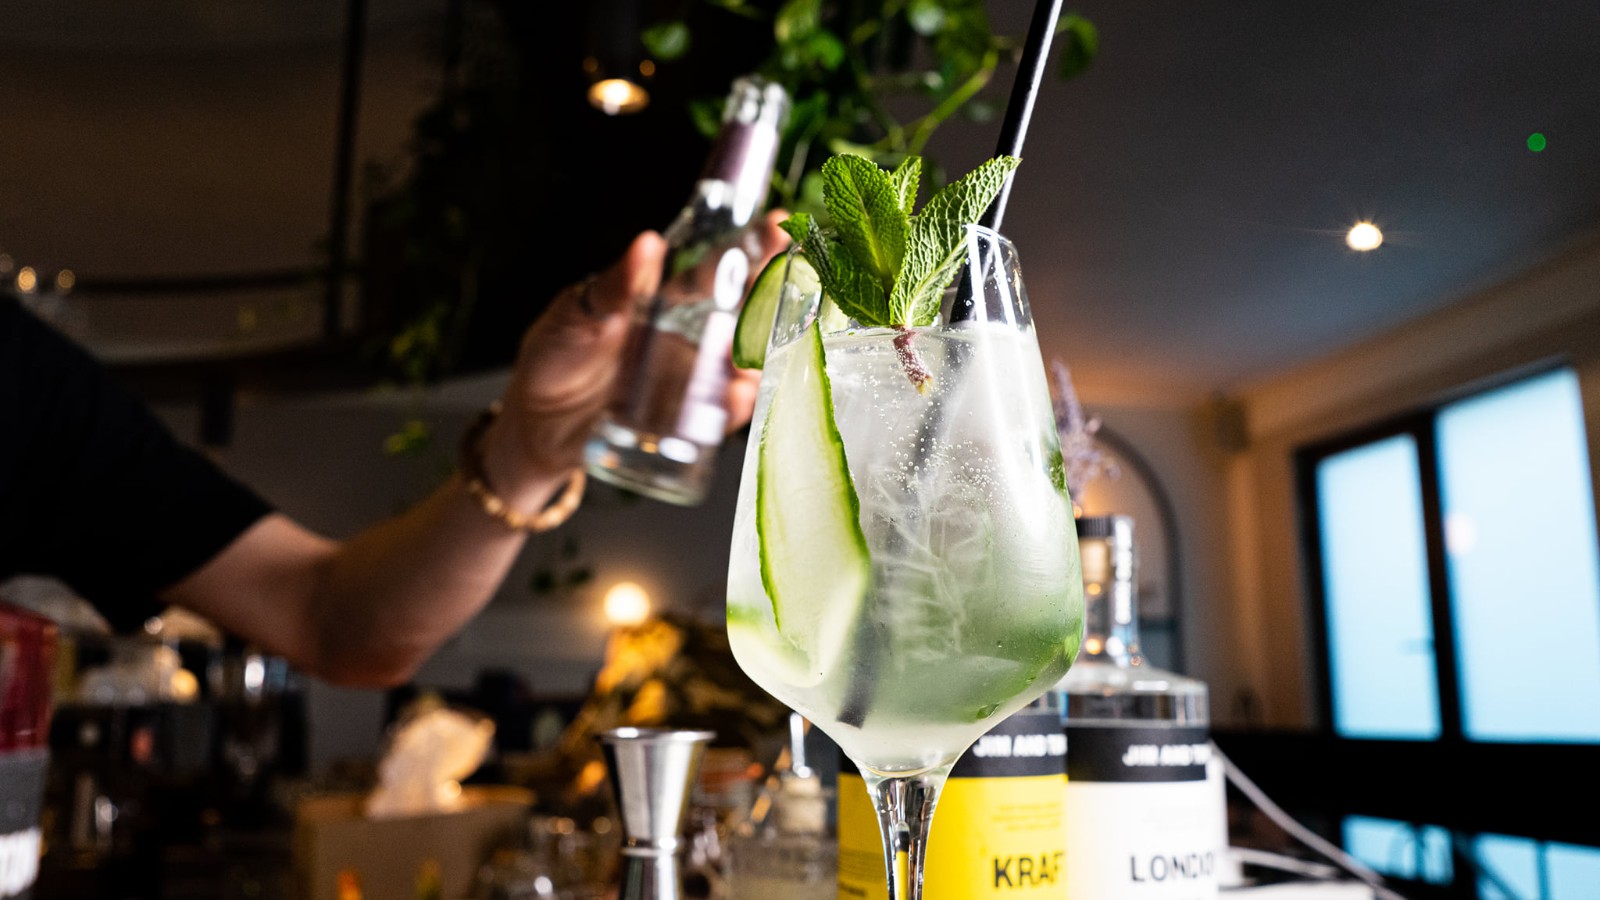 Hãy thưởng thức hương vị tuyệt vời của những ly Cocktail ấn tượng trong hình ảnh sắc nét. Sẽ không còn gì thú vị hơn khi thưởng thức một thức uống mang đến cho bạn những trải nghiệm đáng nhớ trong những dịp đặc biệt hay cuộc hẹn mang đầy ắp cảm xúc.